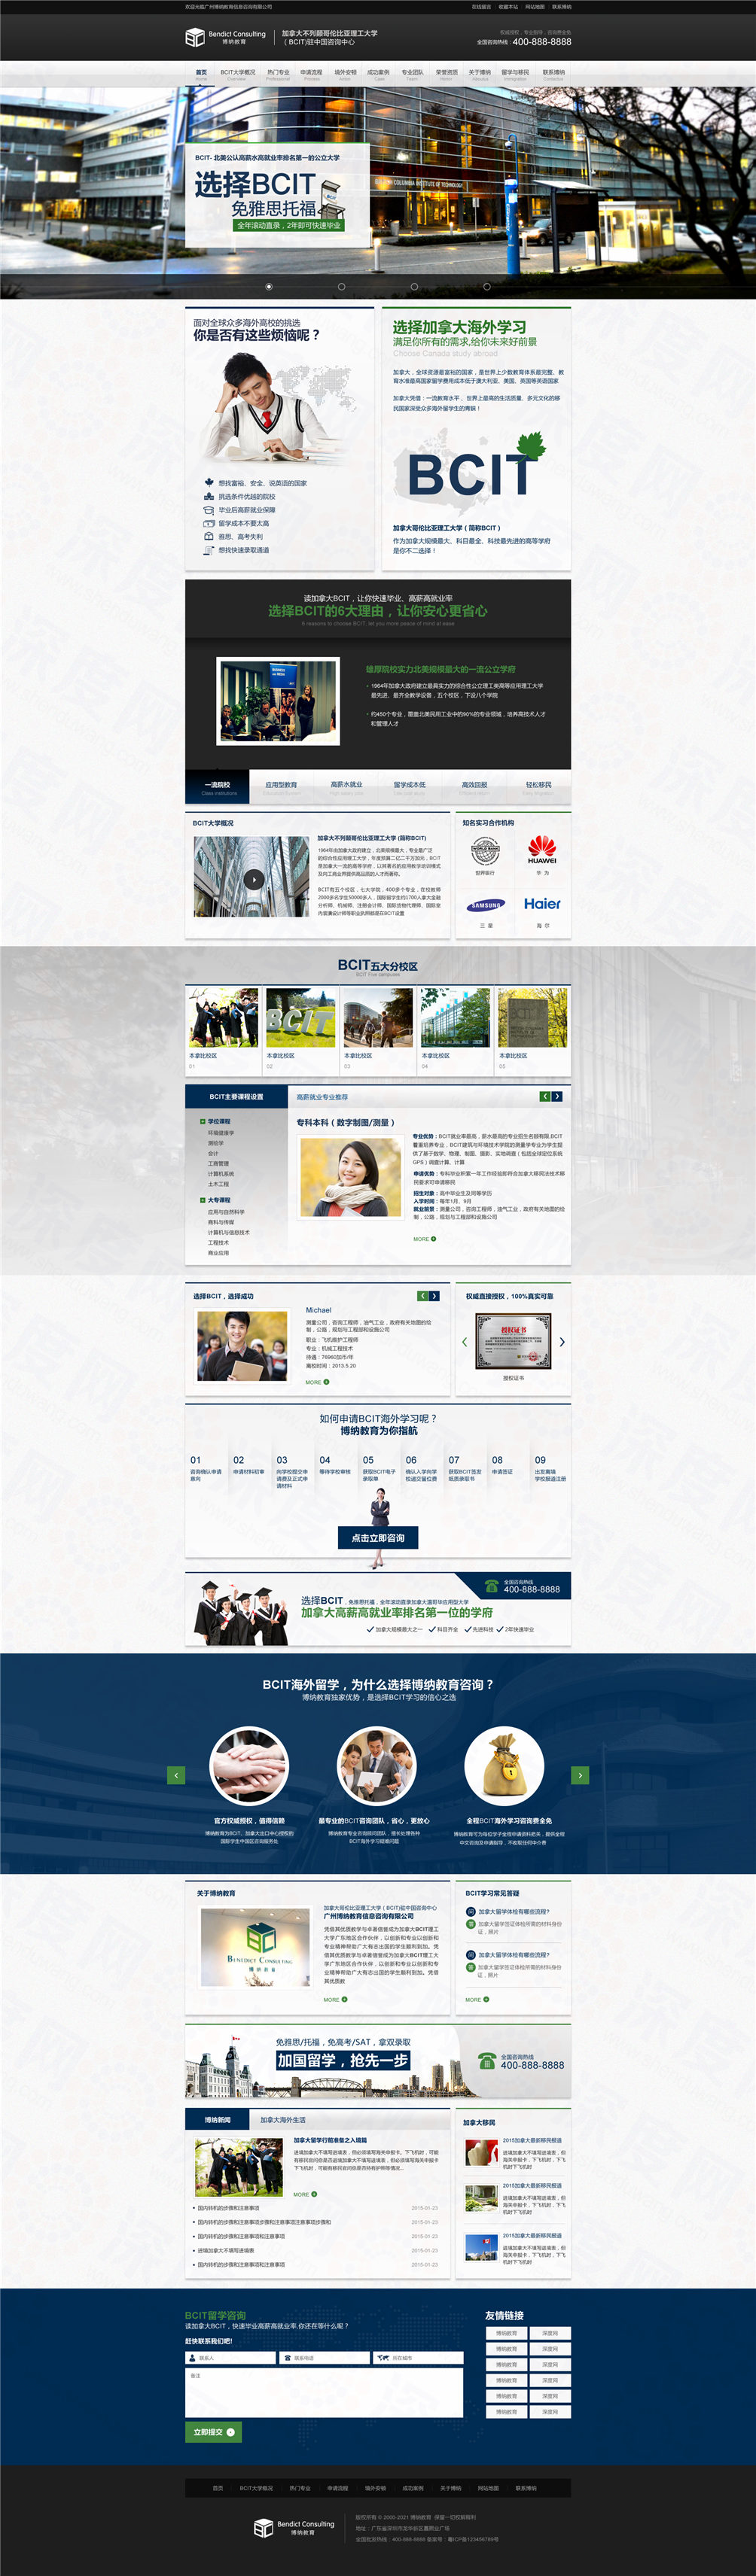 广州博纳教育行业营销型网站建设案例